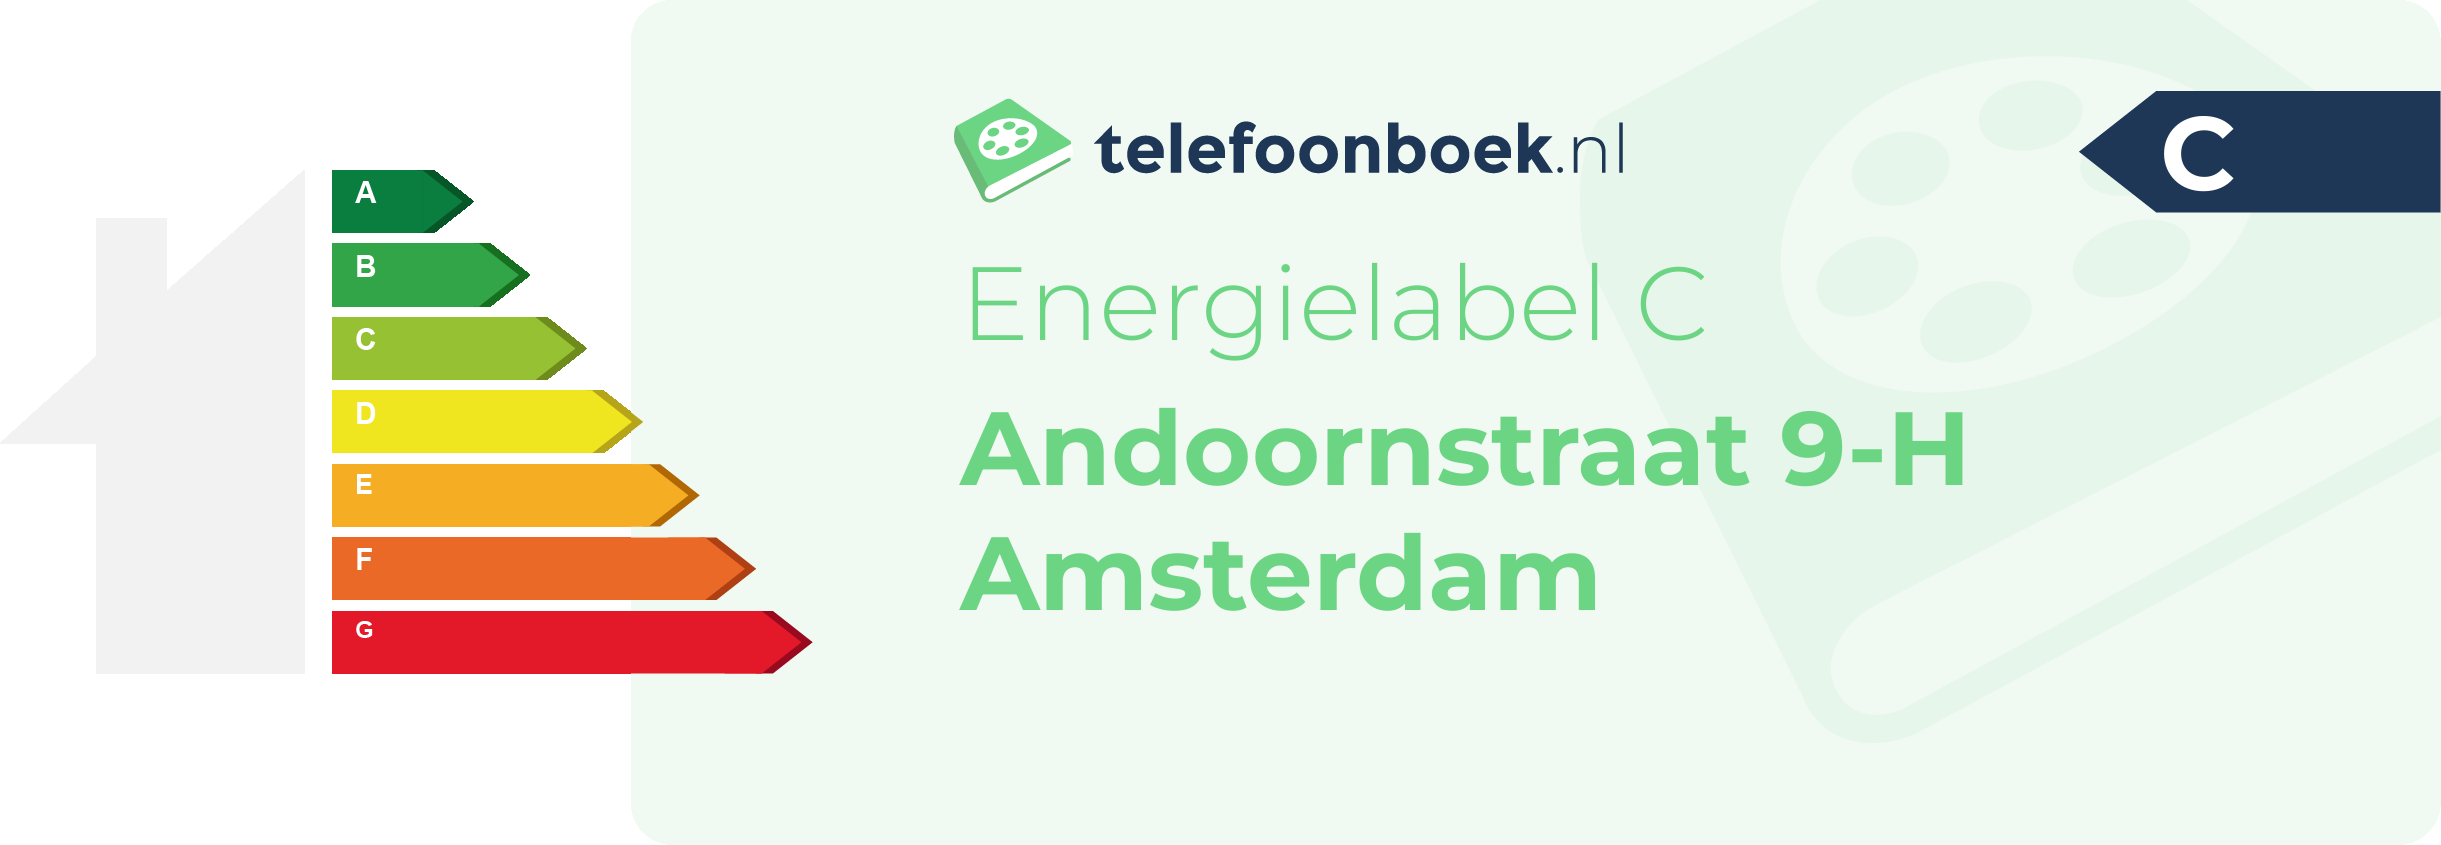 Energielabel Andoornstraat 9-H Amsterdam